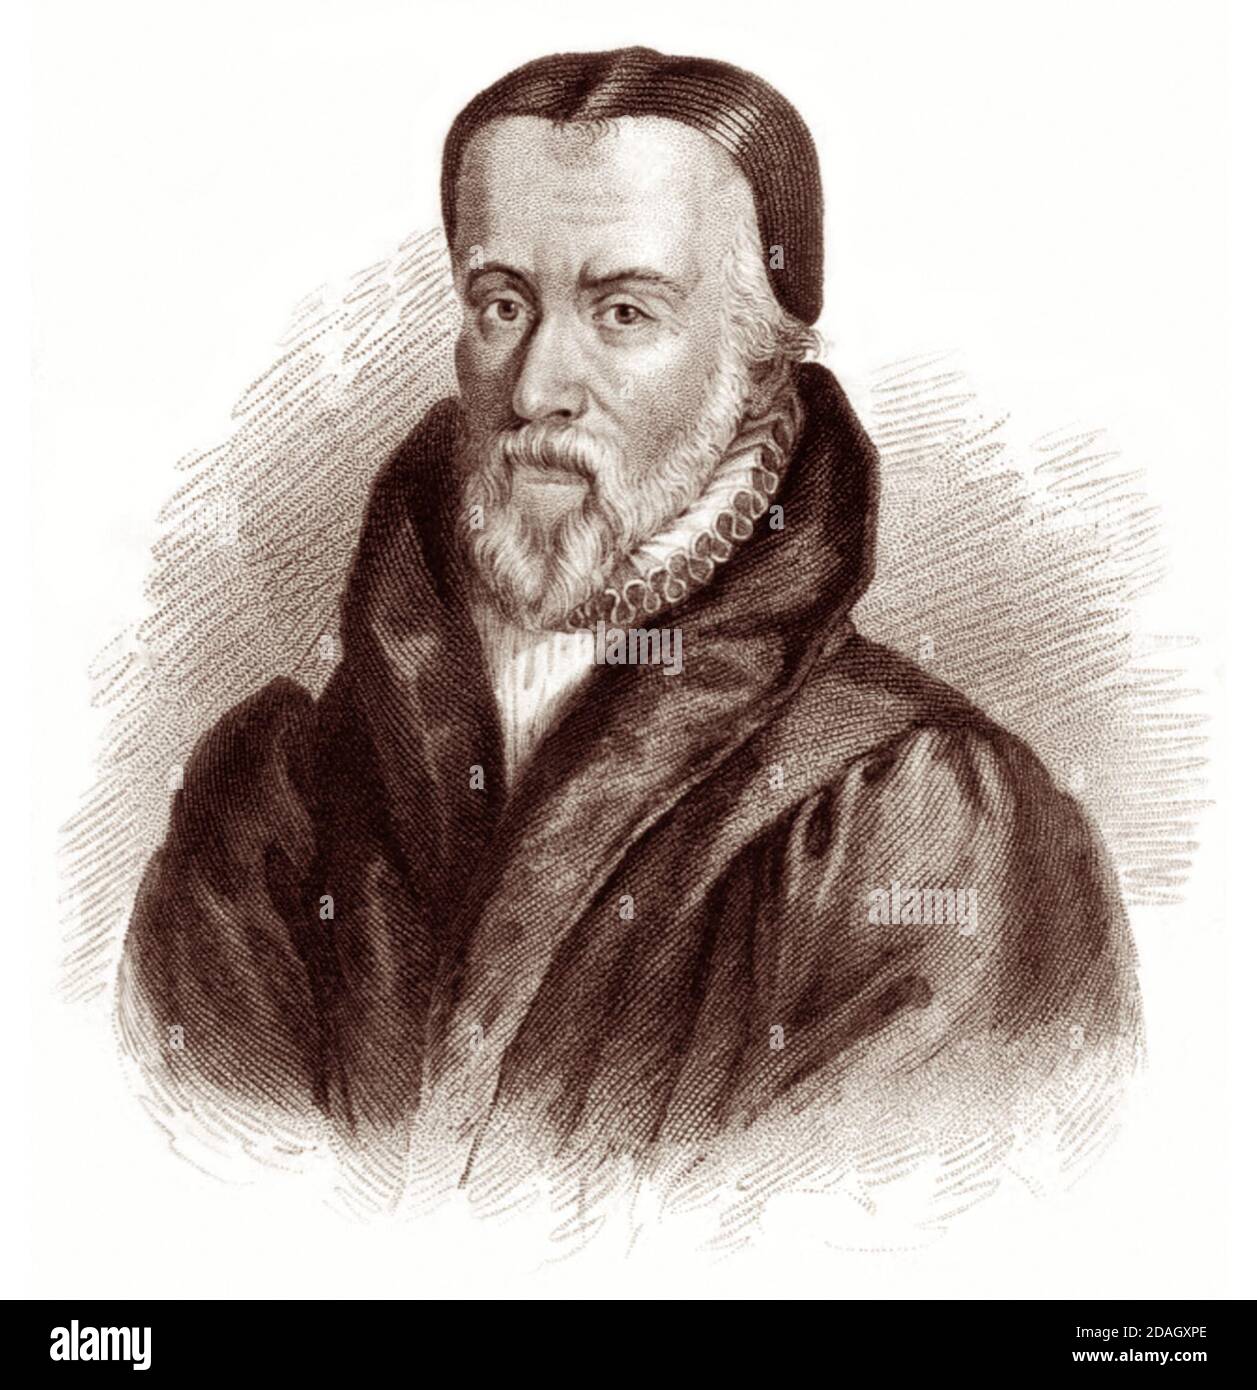 William Tyndale (1494 - 1536) était un érudit et figure de premier plan de la Réforme Protestante qui, à l'encontre de l'Église catholique et du gouvernement anglais, traduit la Bible en anglais, pour lequel il a été étranglé et brûlé sur le bûcher en 1536. Banque D'Images